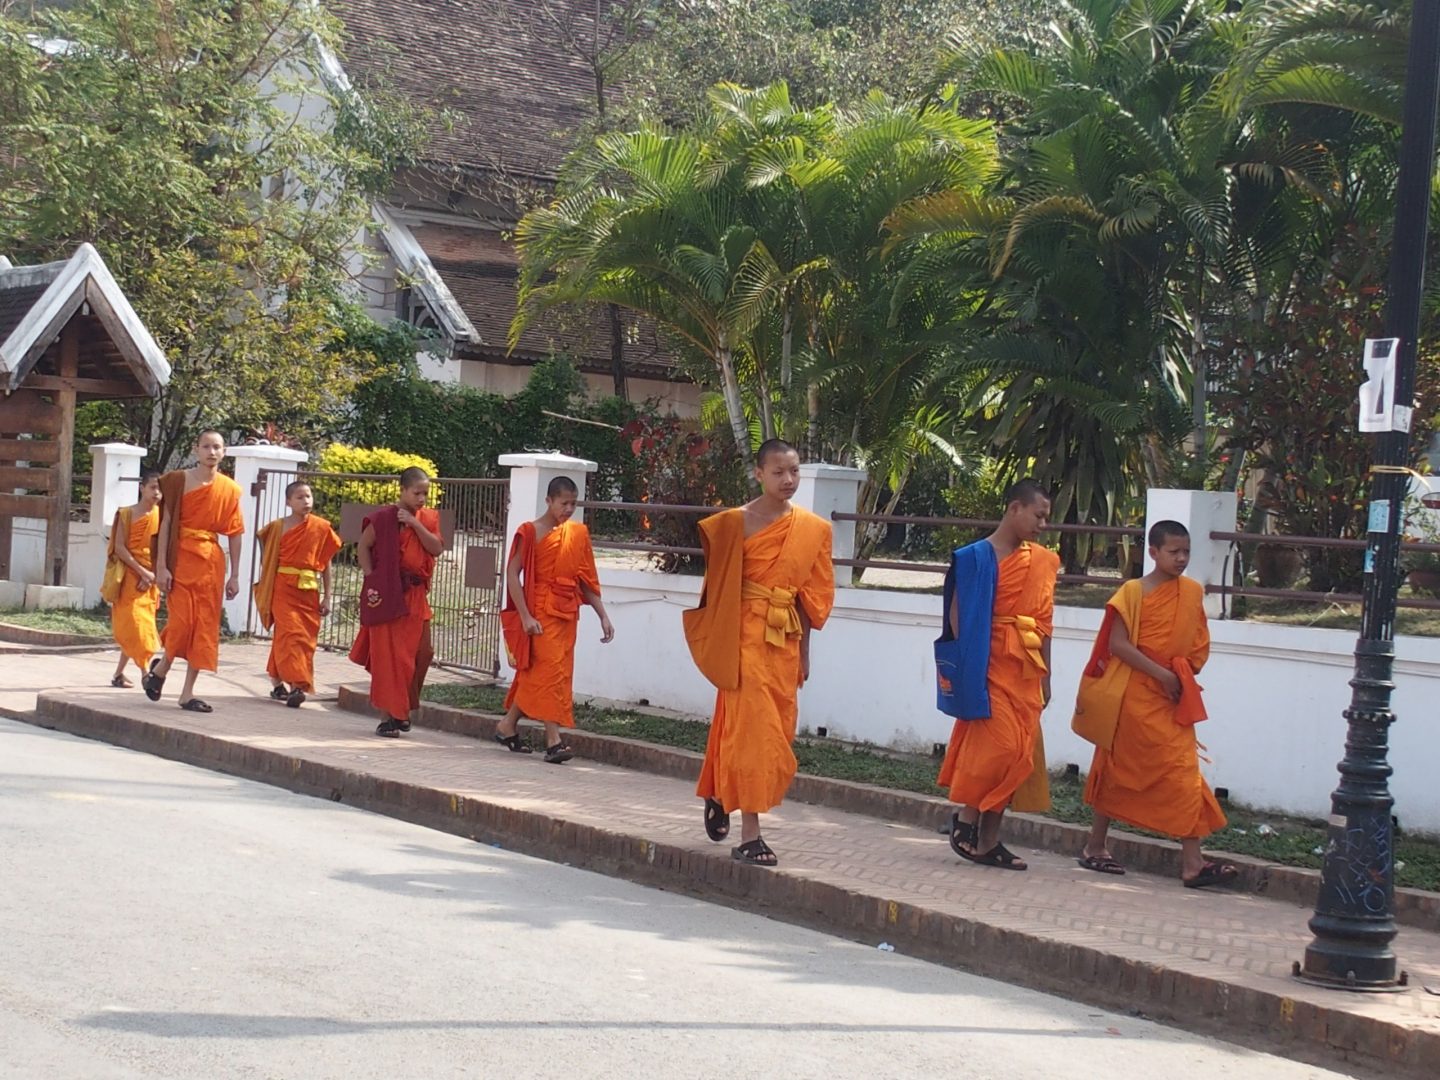 Départ des moines pour les cours Luang Prabang Laos